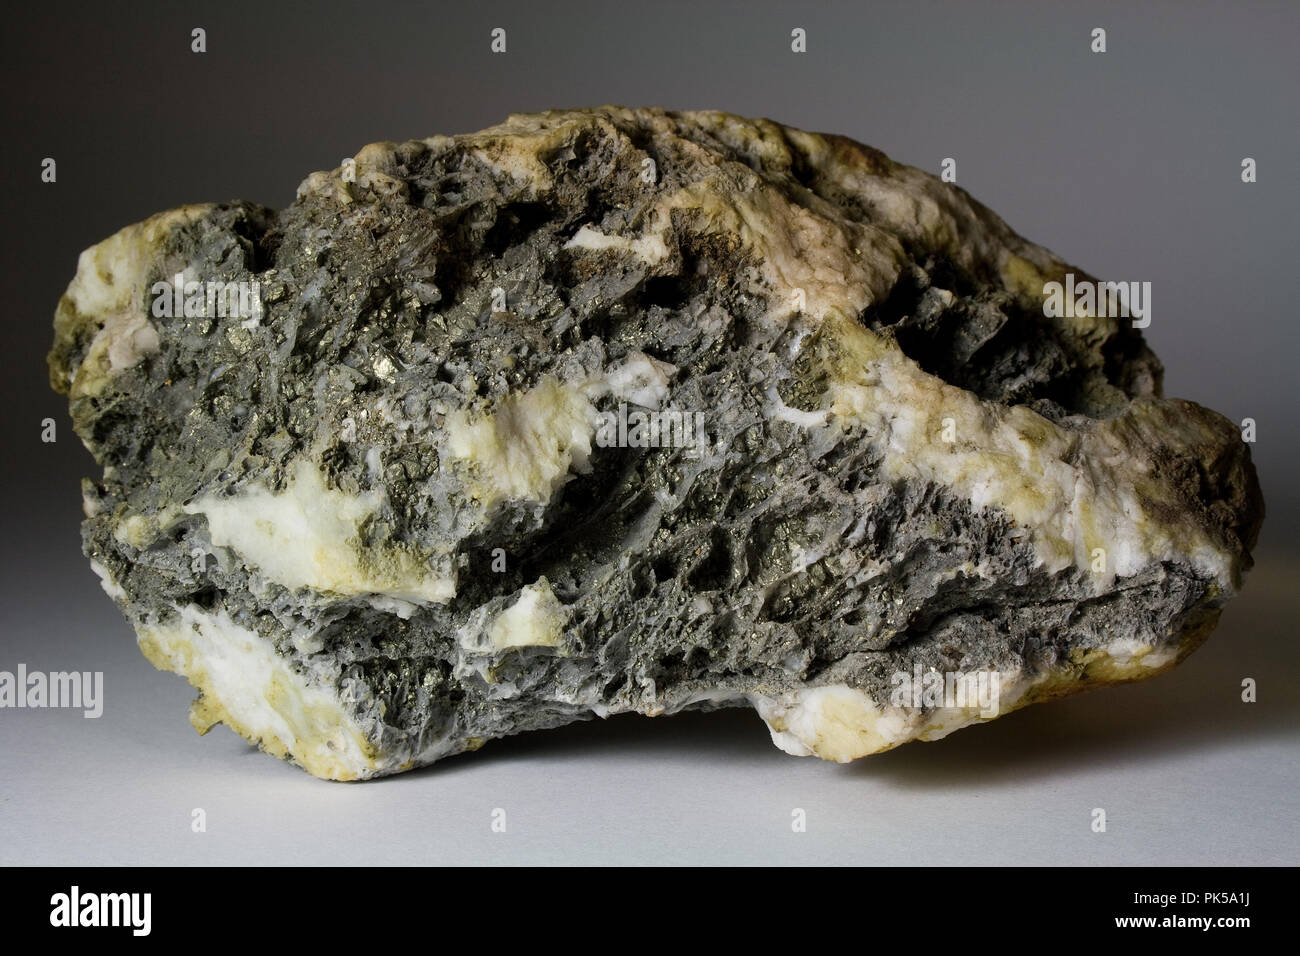 Plata / oro High-Grade mineral - encontrado cerca de Philpsburg, Montana, EE.UU. Foto de stock